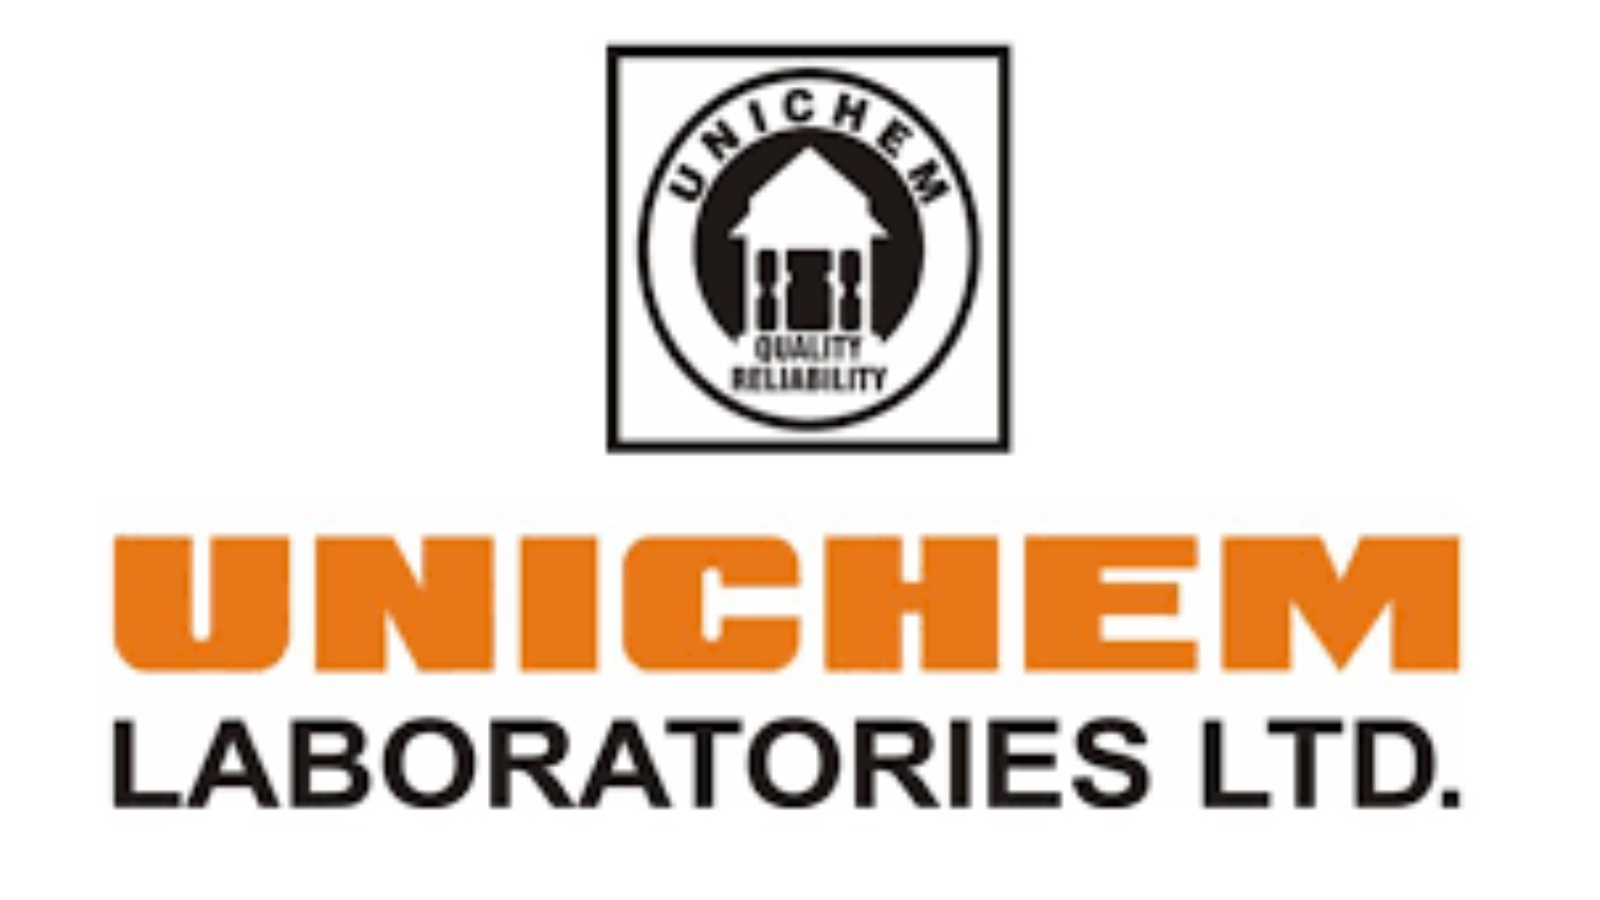 Unichem Laboratories